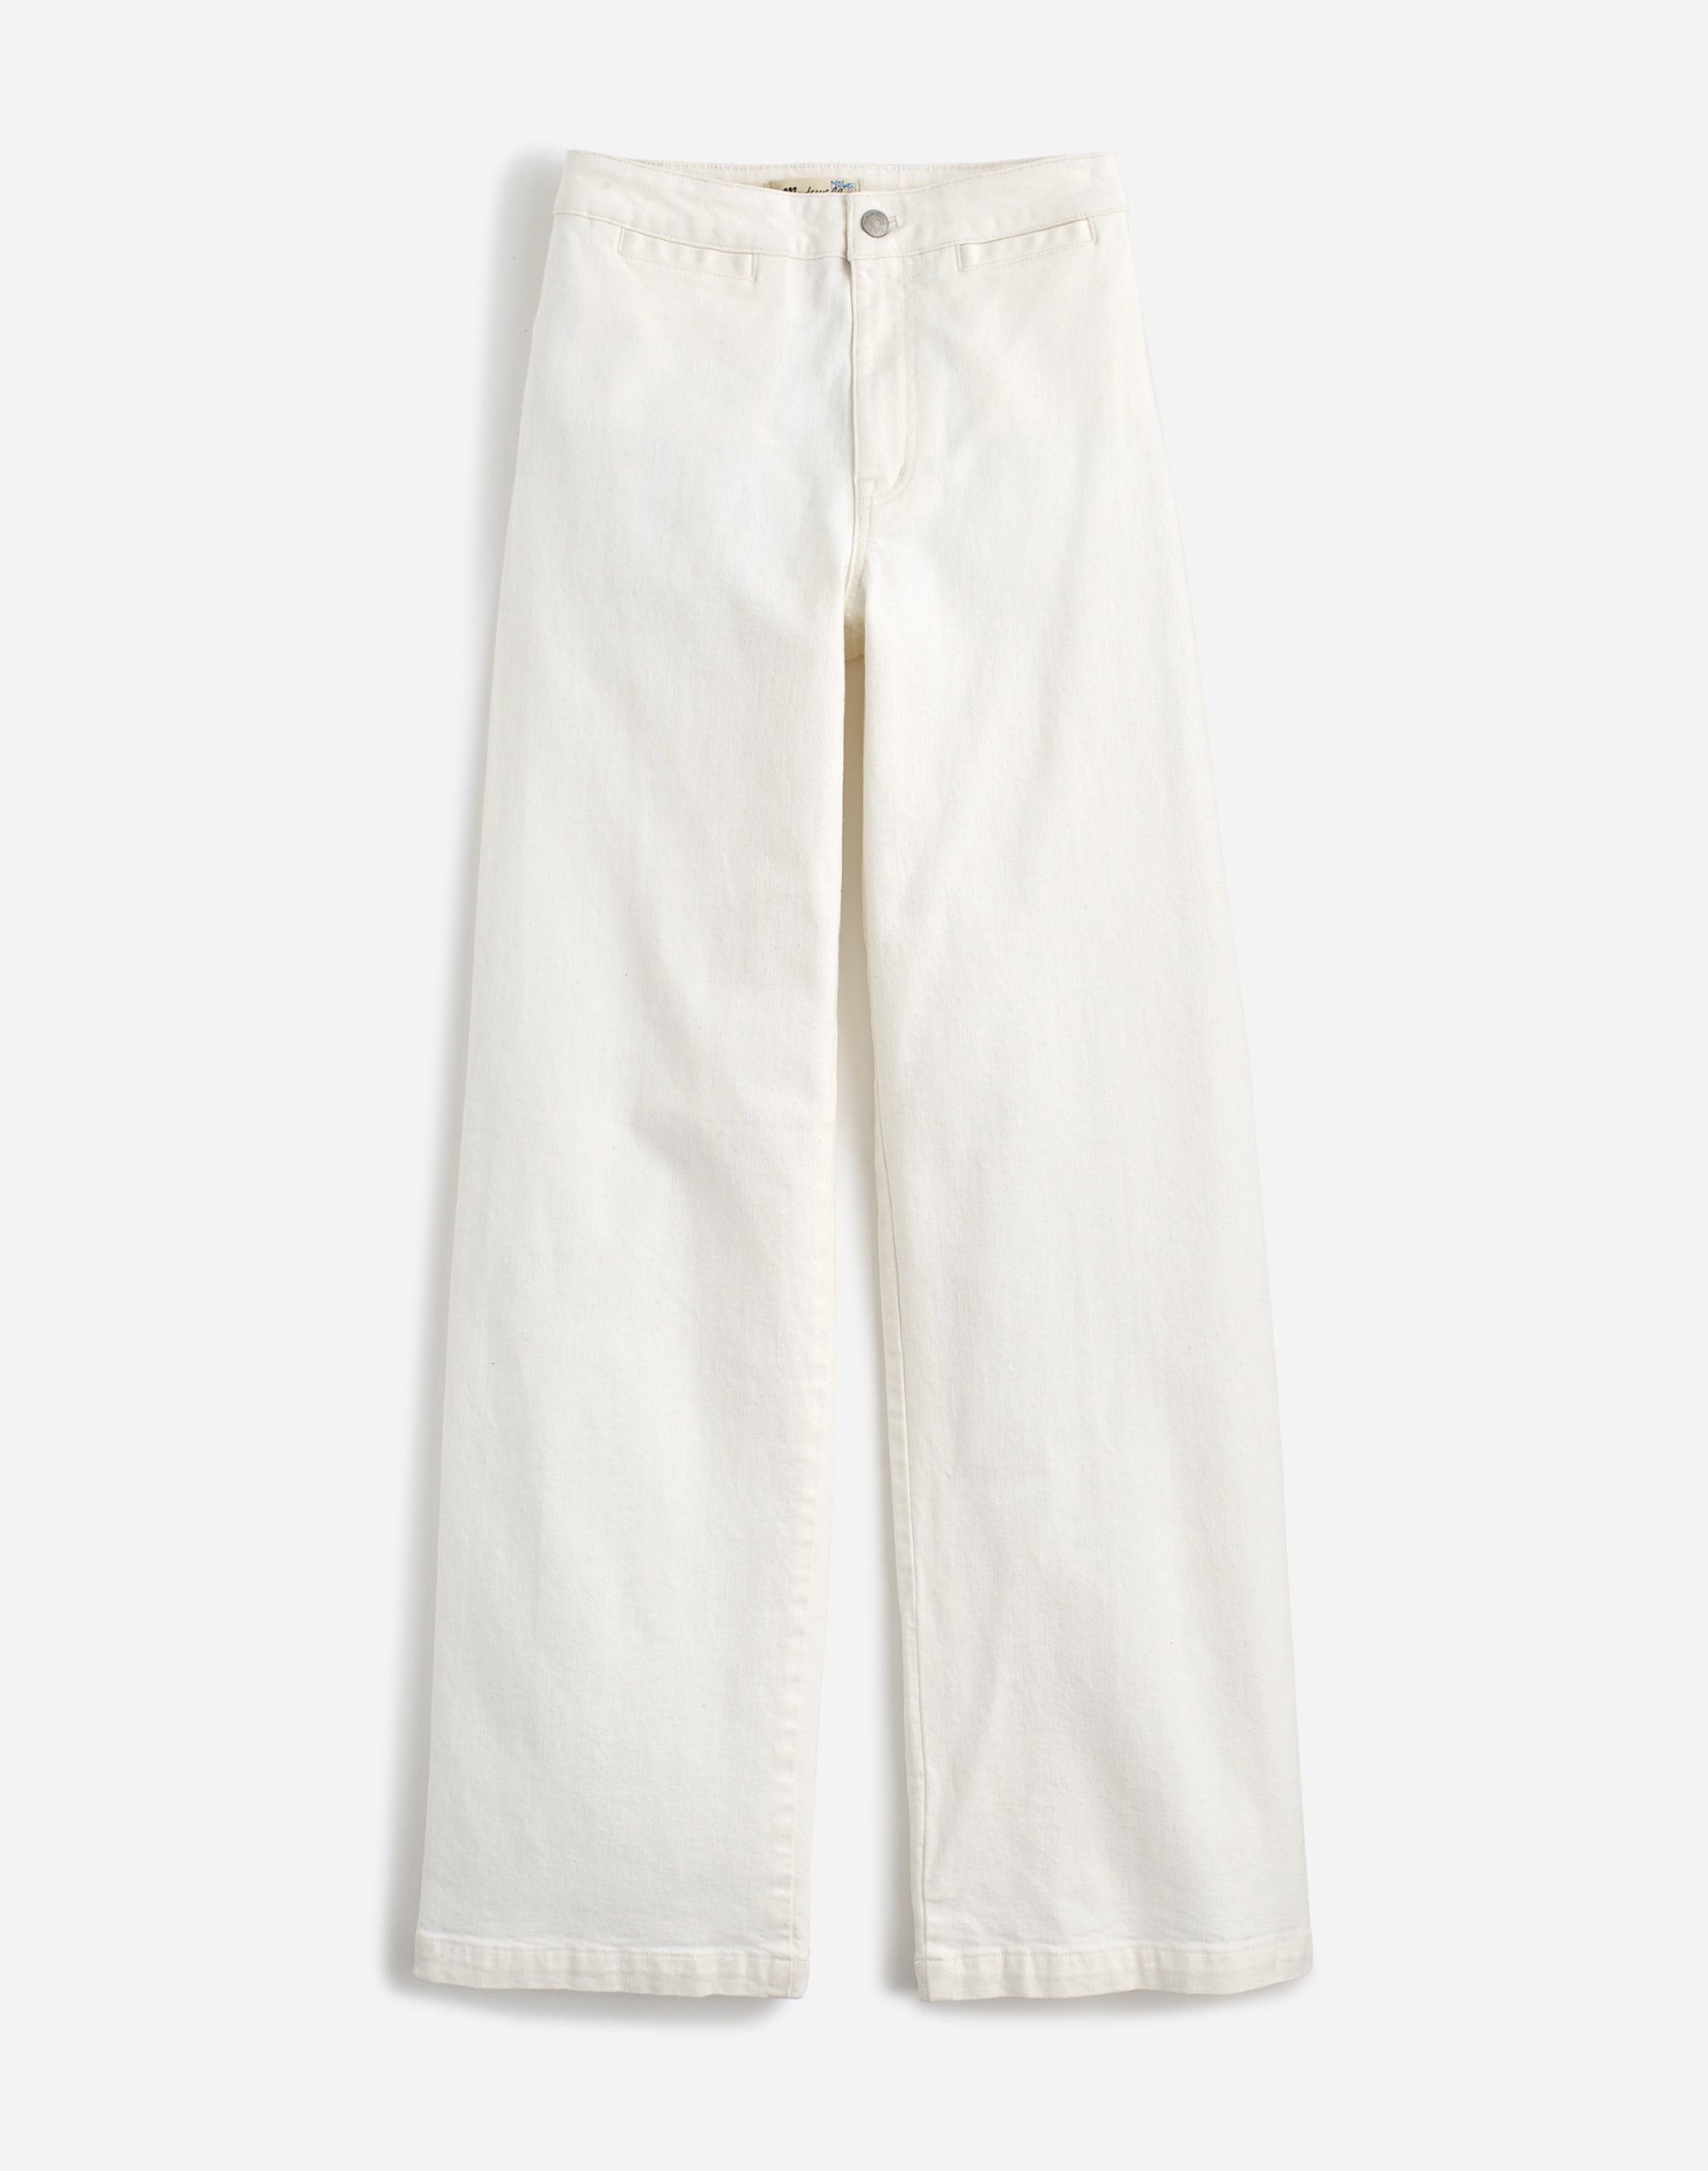 The Emmett Wide-Leg Jean in Tile White: Welt Pocket Edition | Madewell